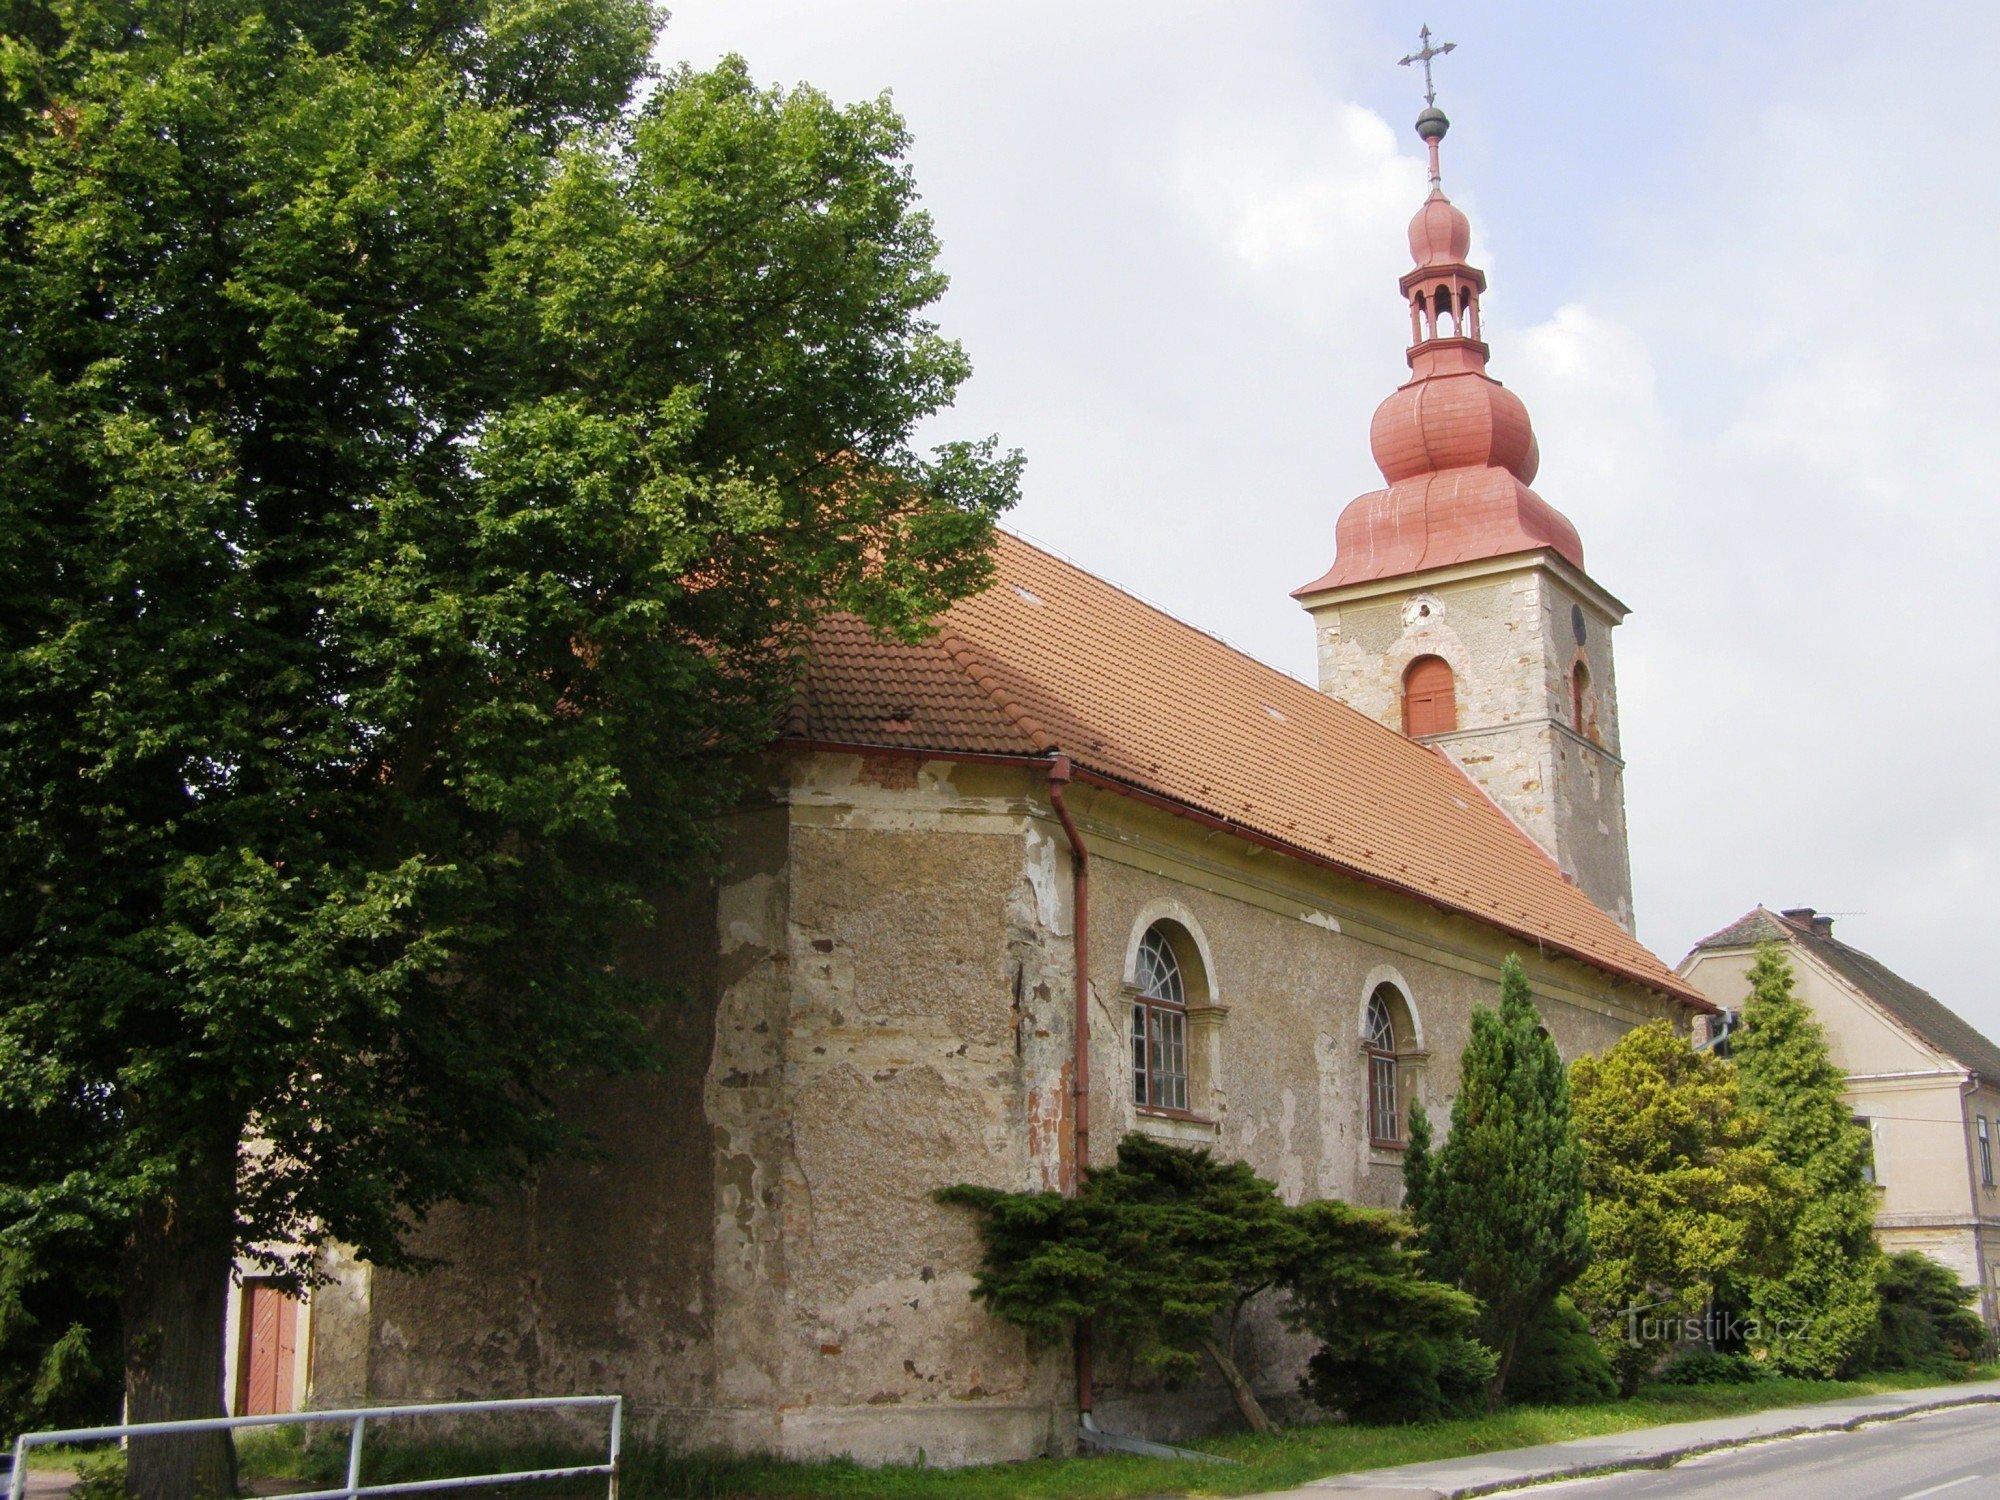 Влчковіце в Підкрконоші - церква св. Йосип